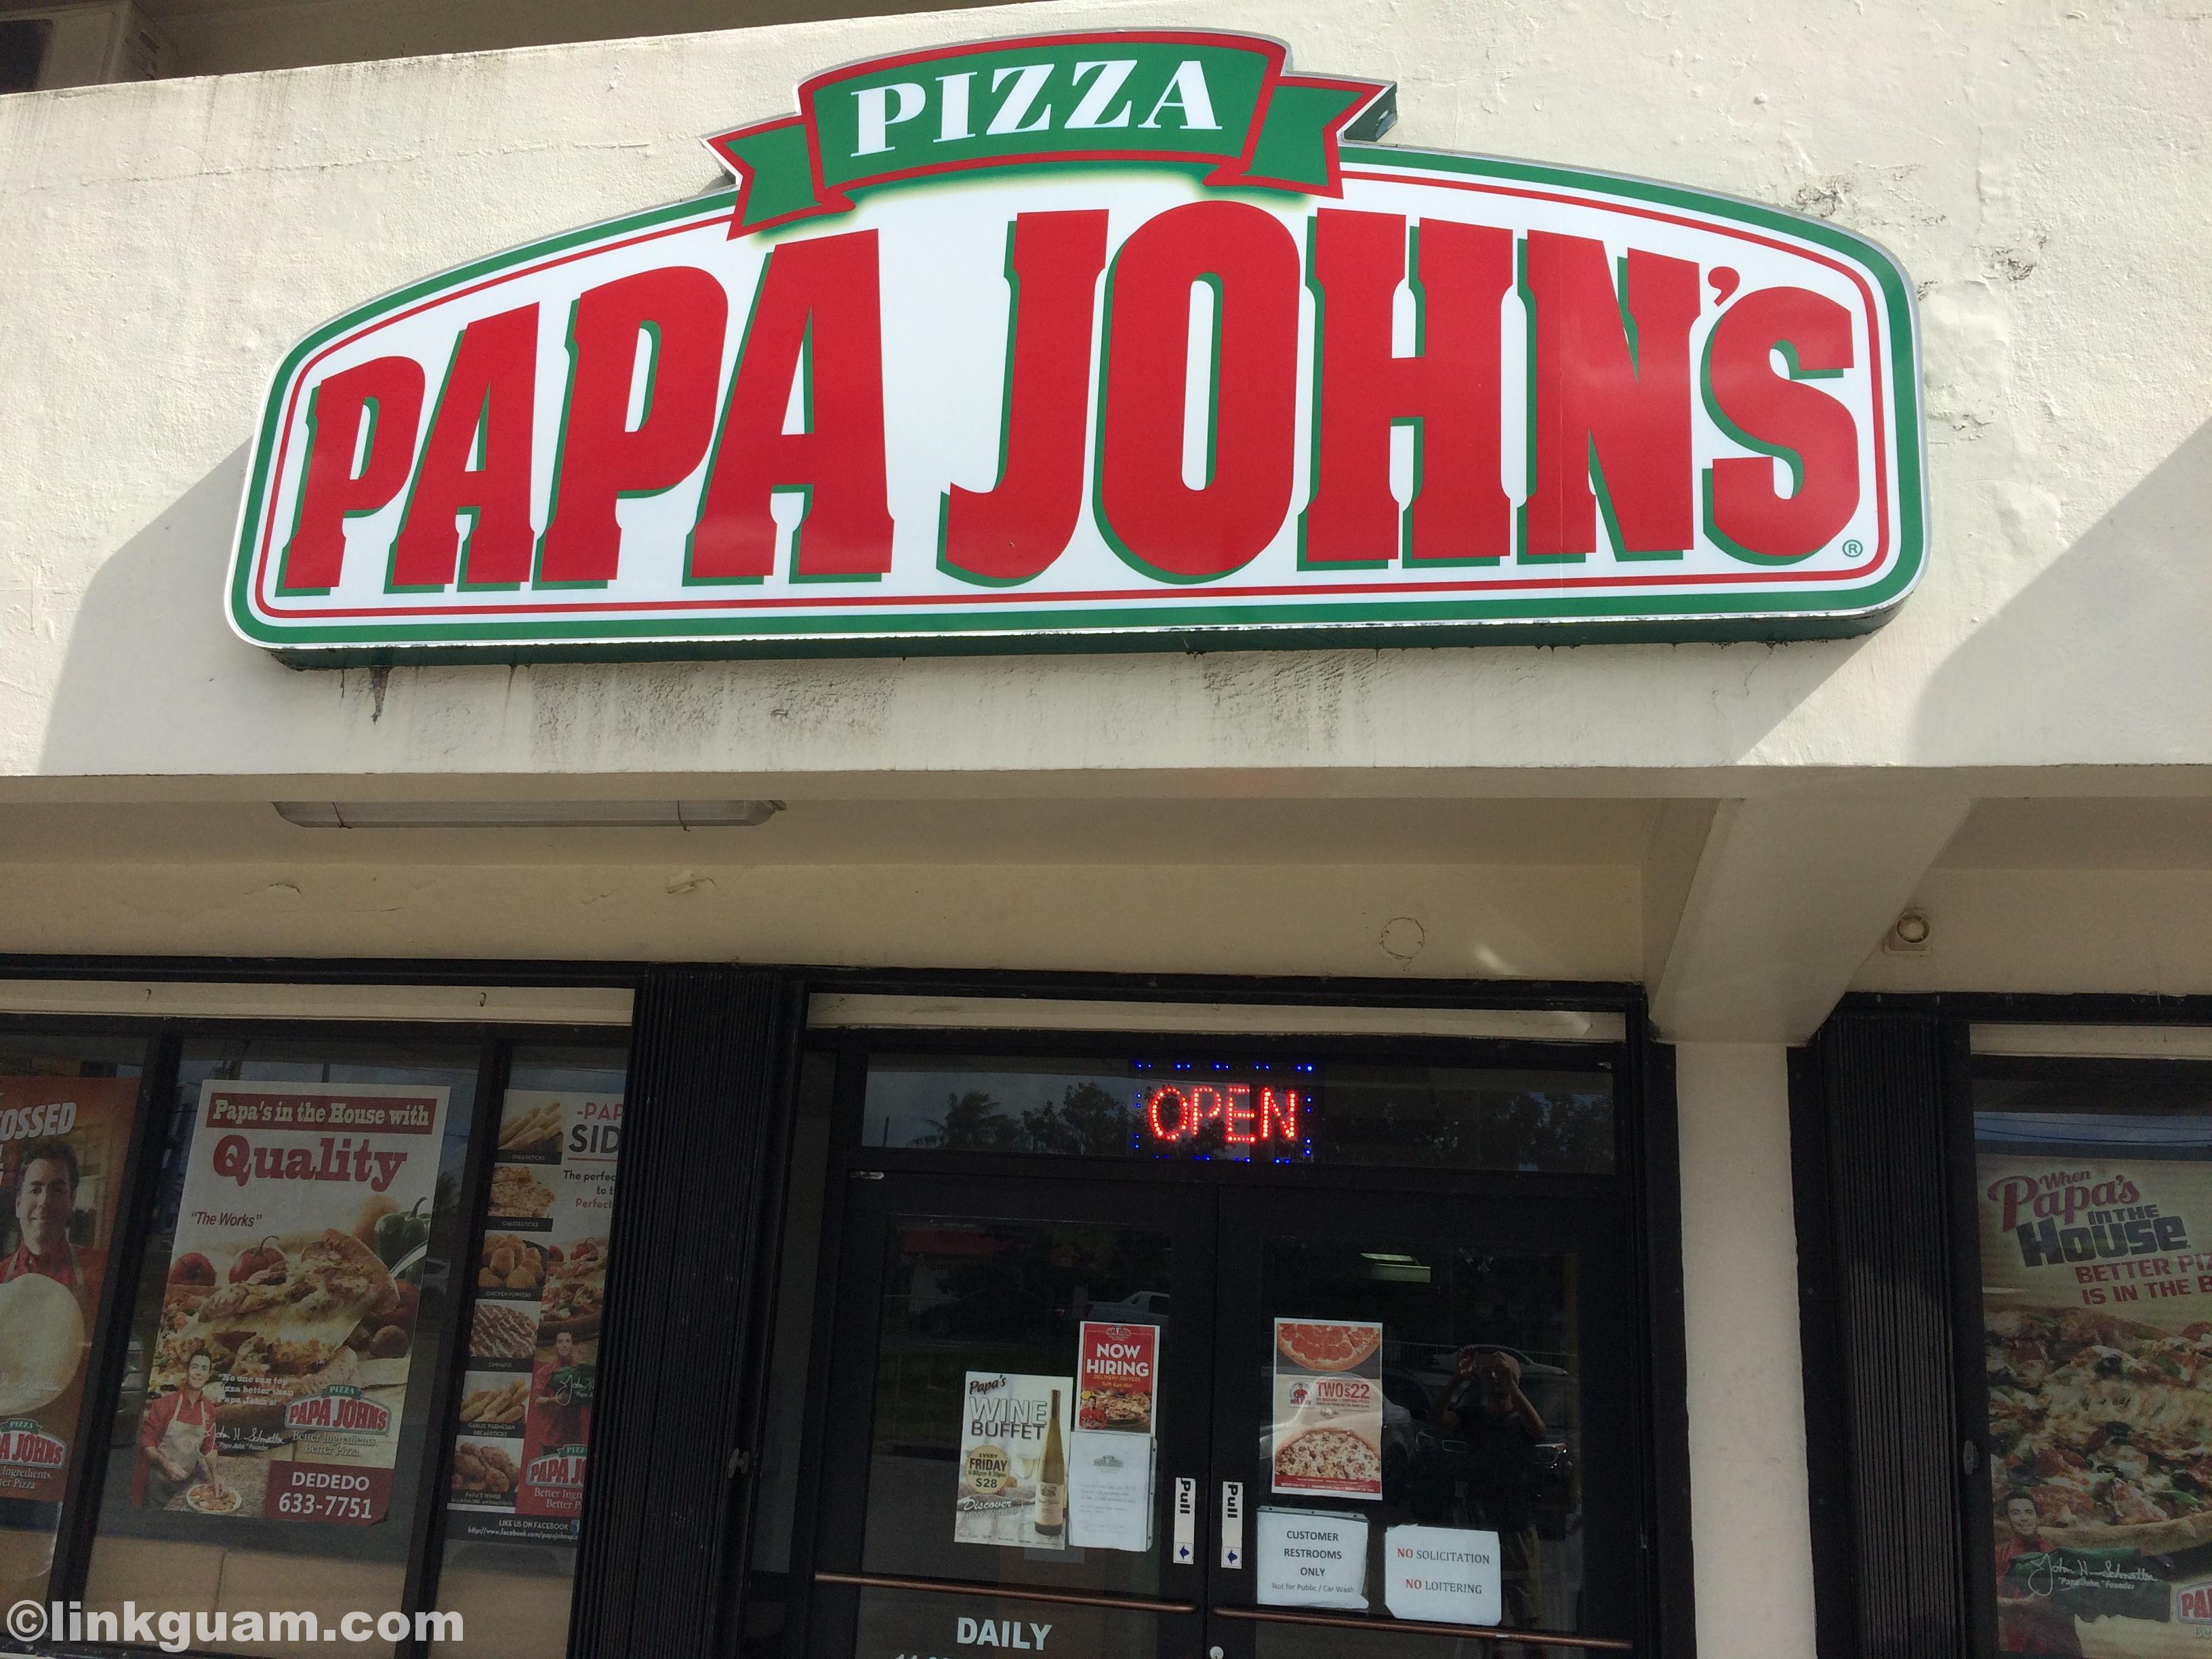 グアム旅行でpapa Johns パパジョンズ のピザを楽しみたい いいもの いい場所を伝えたい